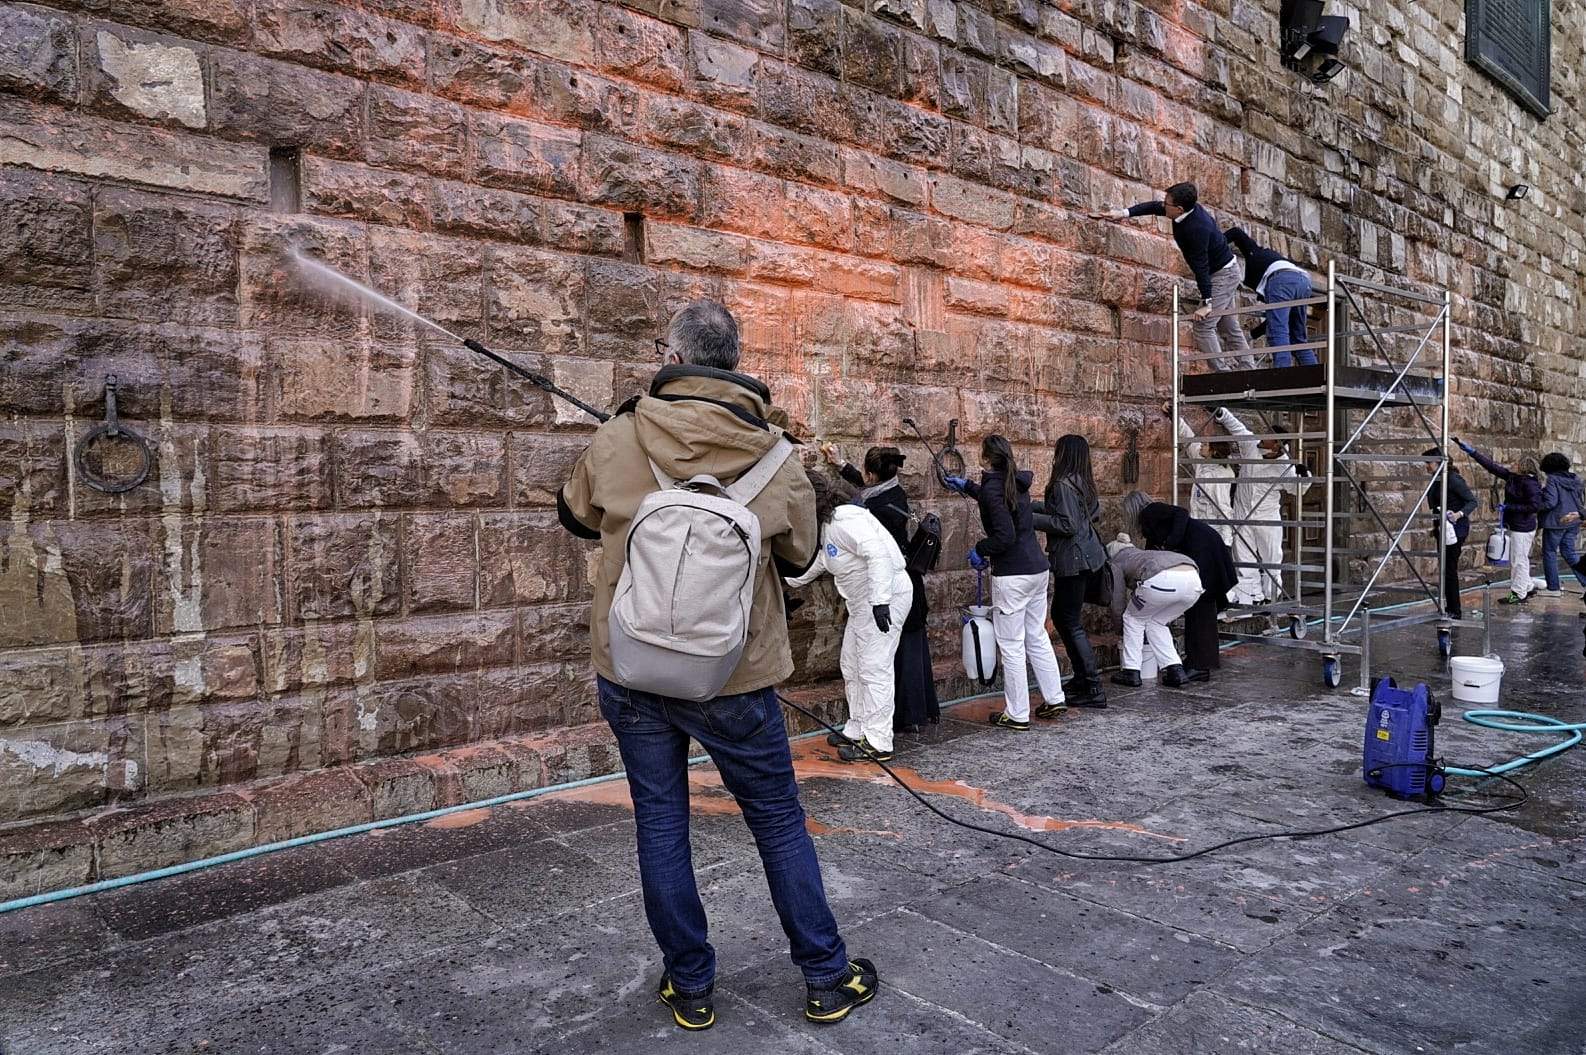 La vernice utilizzata per imbrattare Palazzo Vecchio? Pericolosa per le pietre storiche